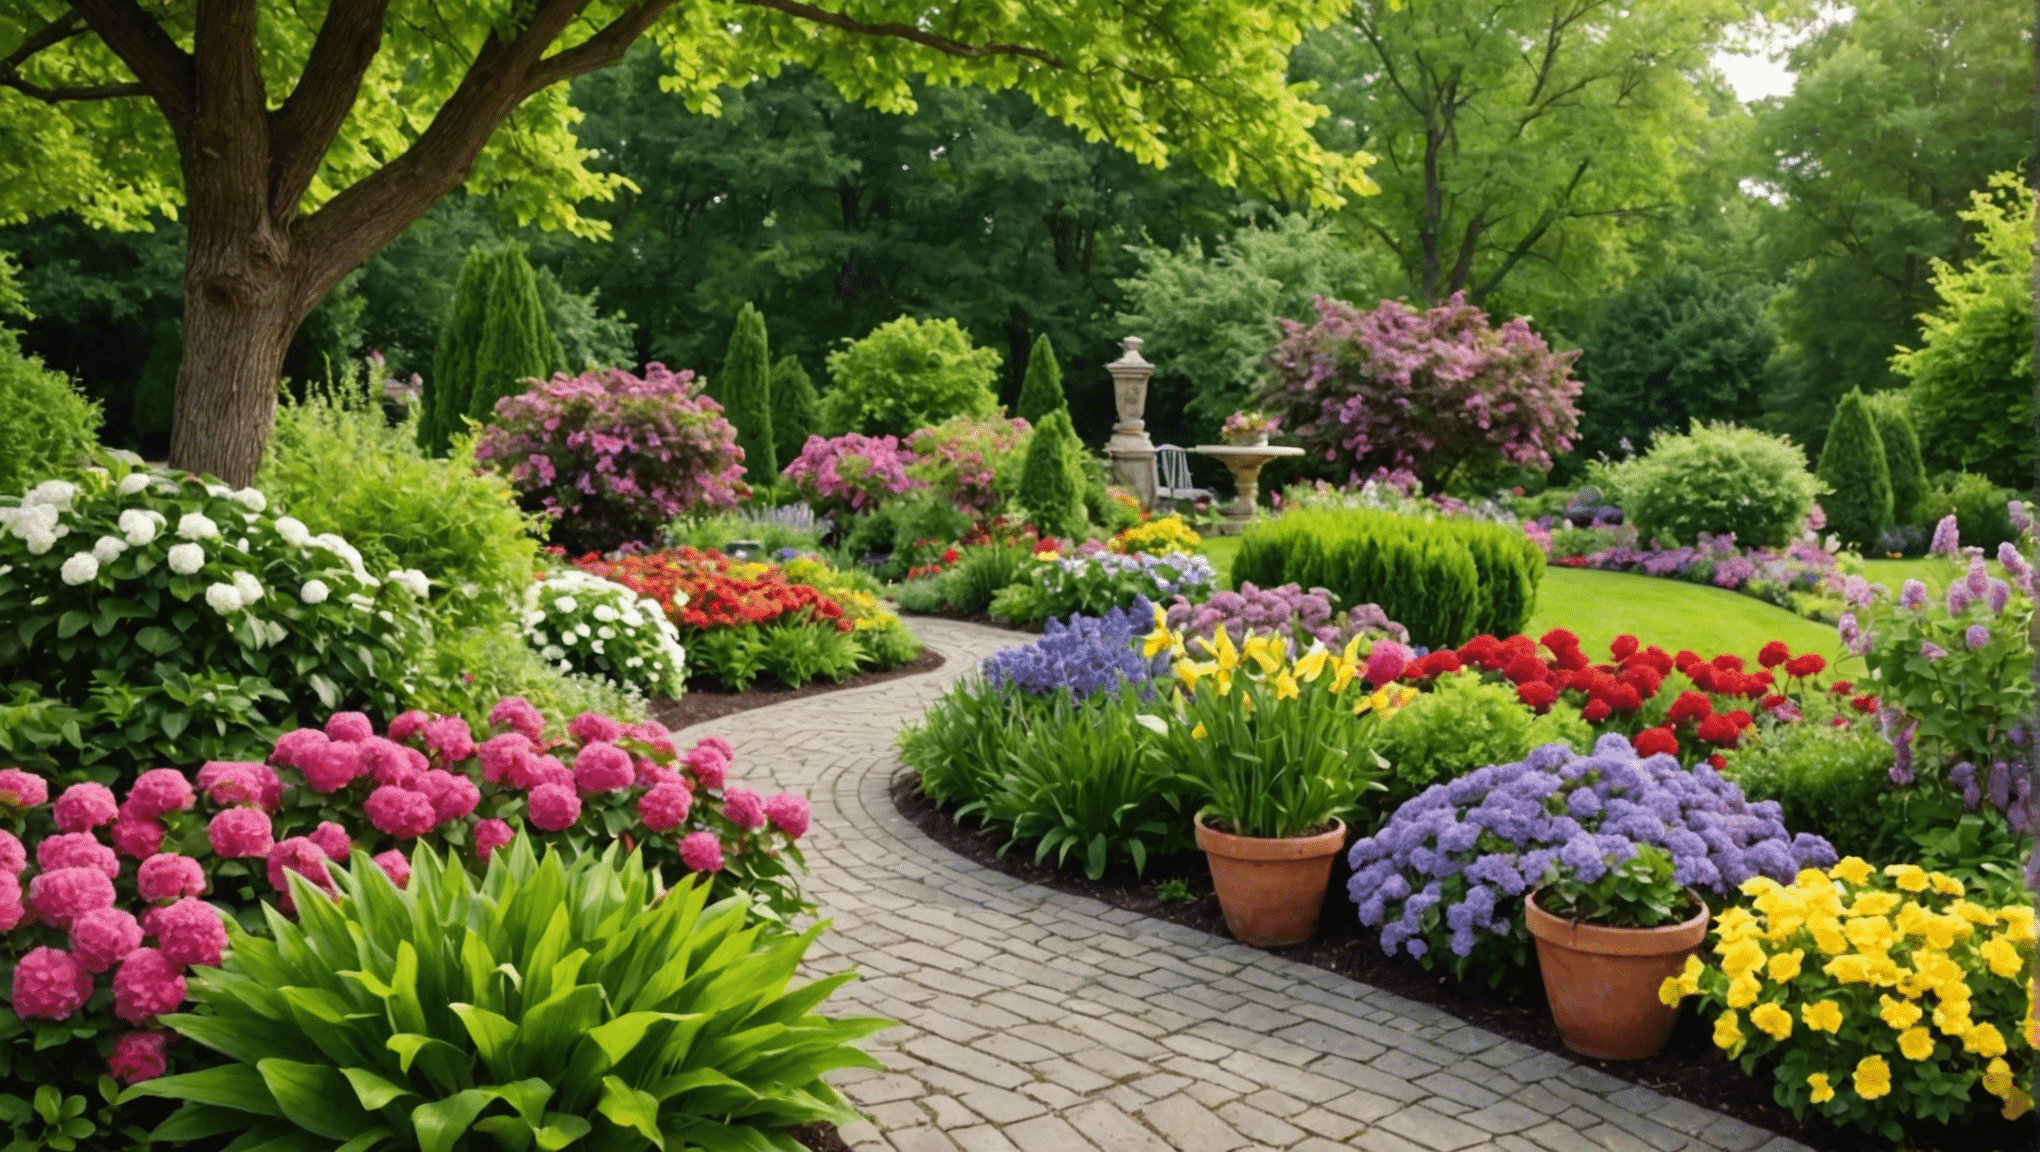 objavte najlepšie nápady na letné záhradníctvo, ktoré pozdvihnú váš vonkajší priestor. od živých kvetinových aranžmánov až po inovatívne udržateľné postupy, nájdite inšpiráciu na pestovanie prosperujúcej záhrady túto sezónu.